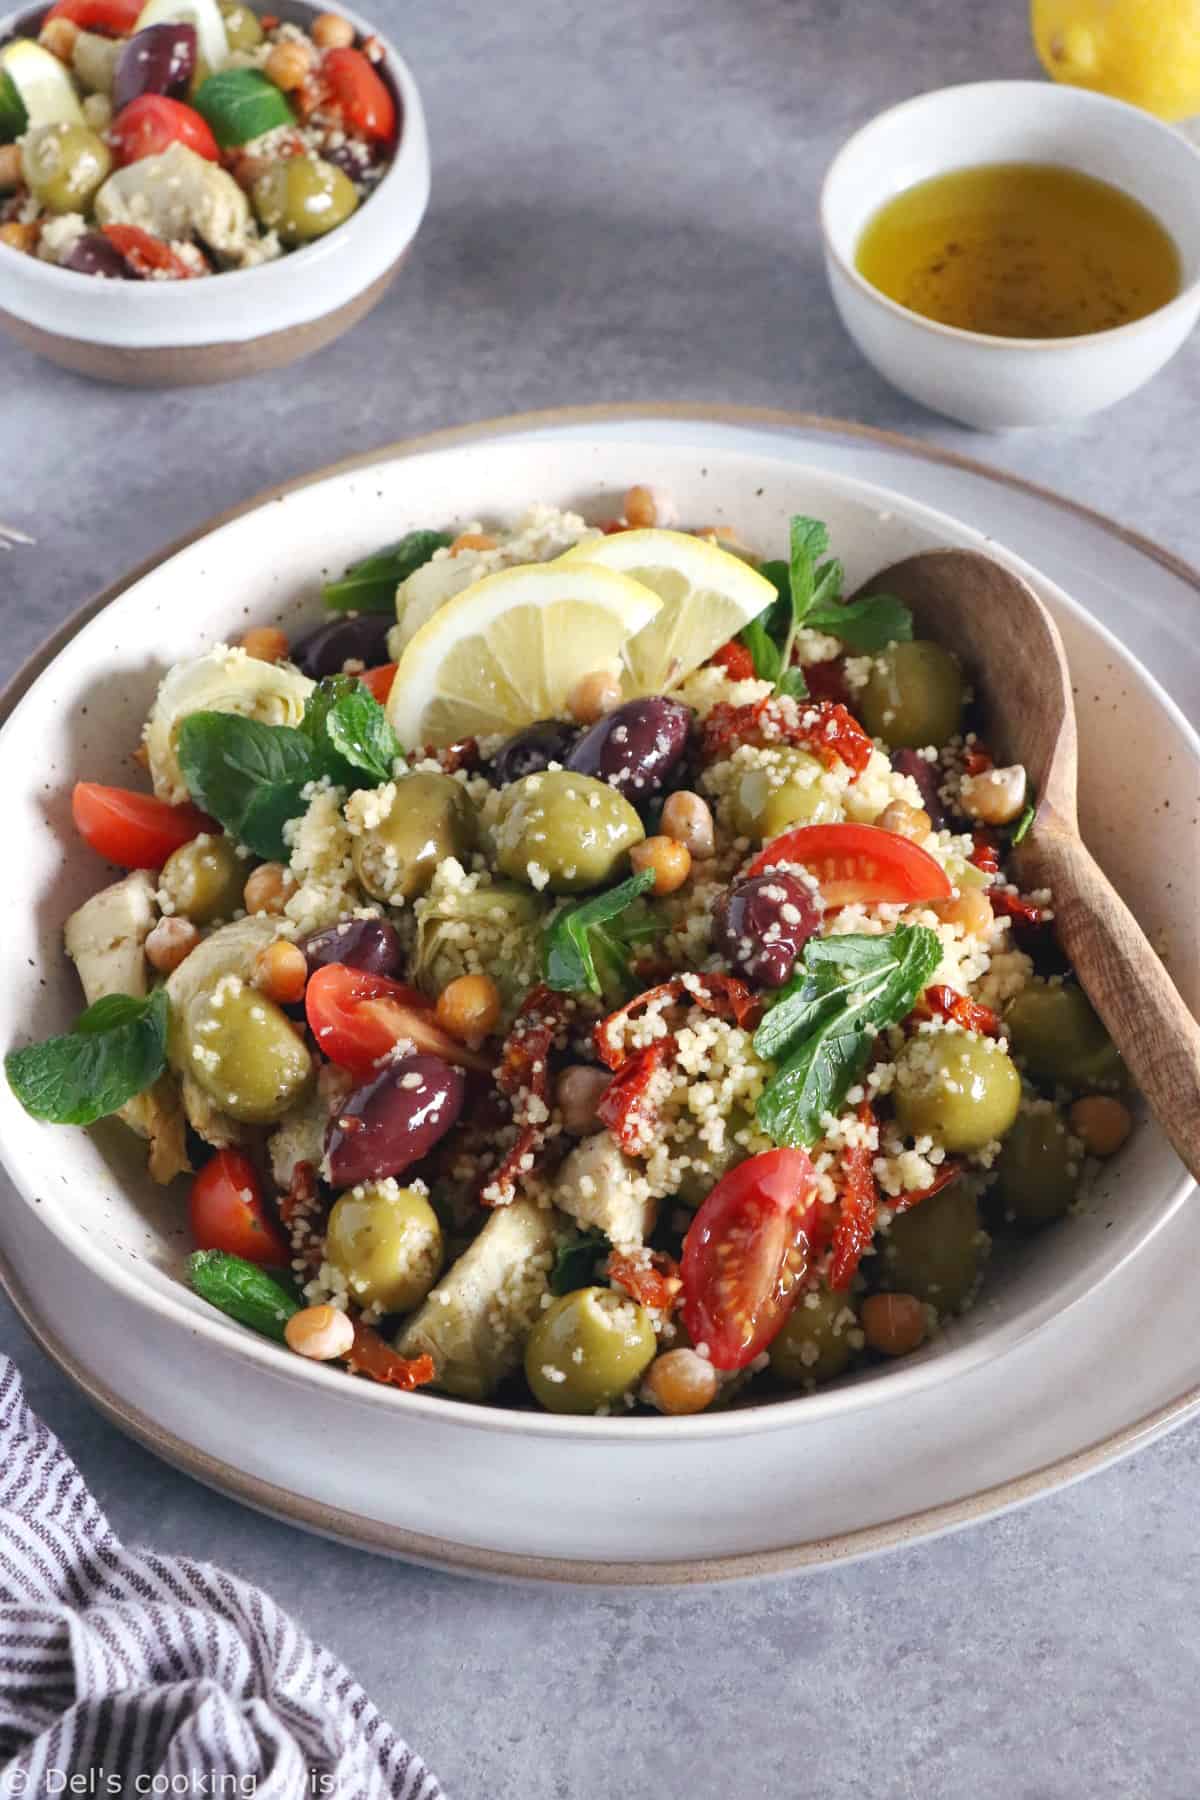 On met un peu de soleil dans notre assiette avec cette salade de couscous méditerranéenne aux pois chiches, olives et coeurs d'artichauts.